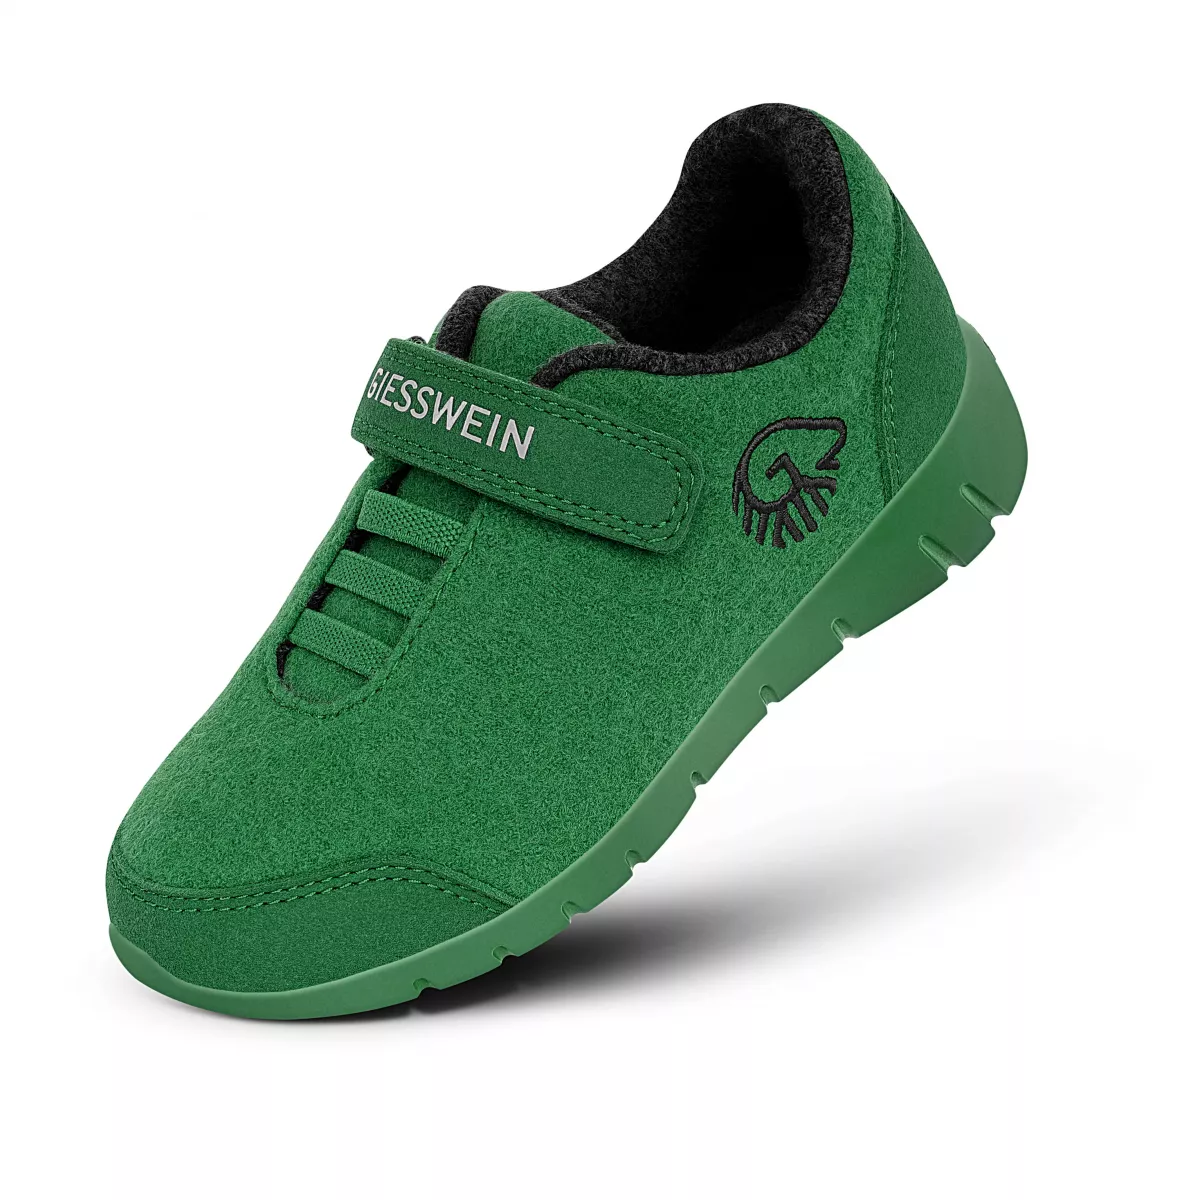 Pantofi copii Merino Runners verde 31